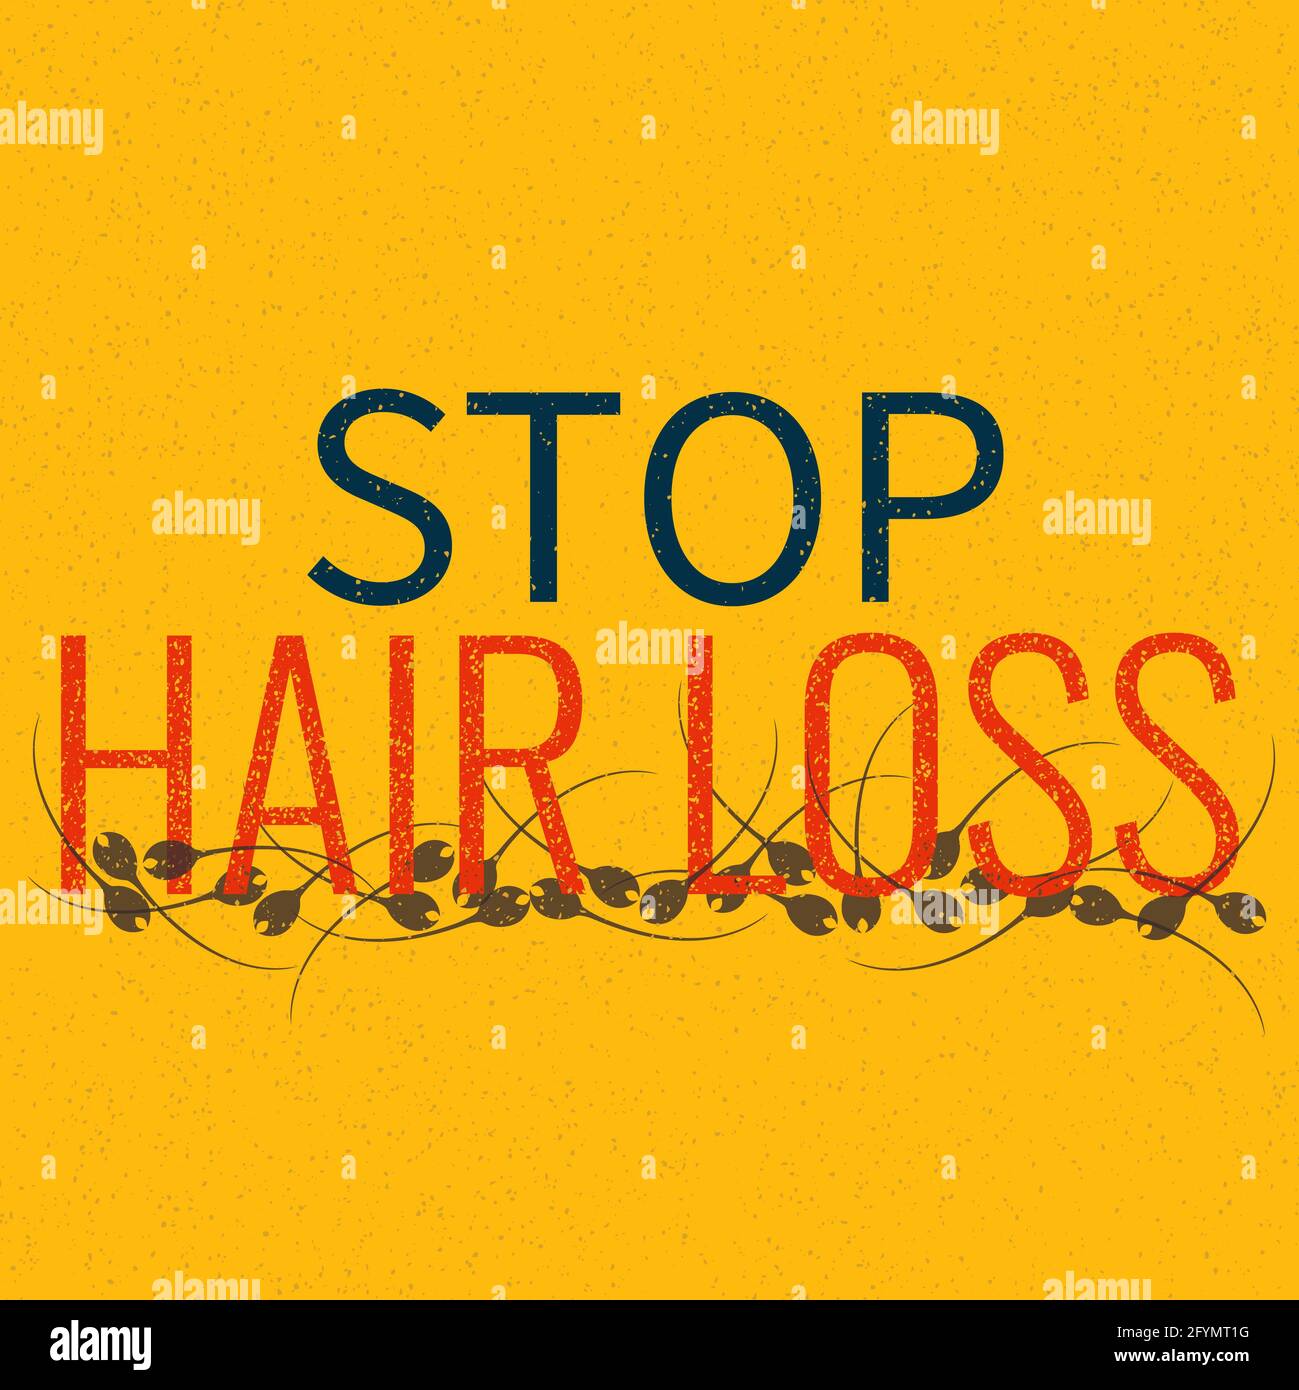 La perte de cheveux, illustration conceptuelle Banque D'Images